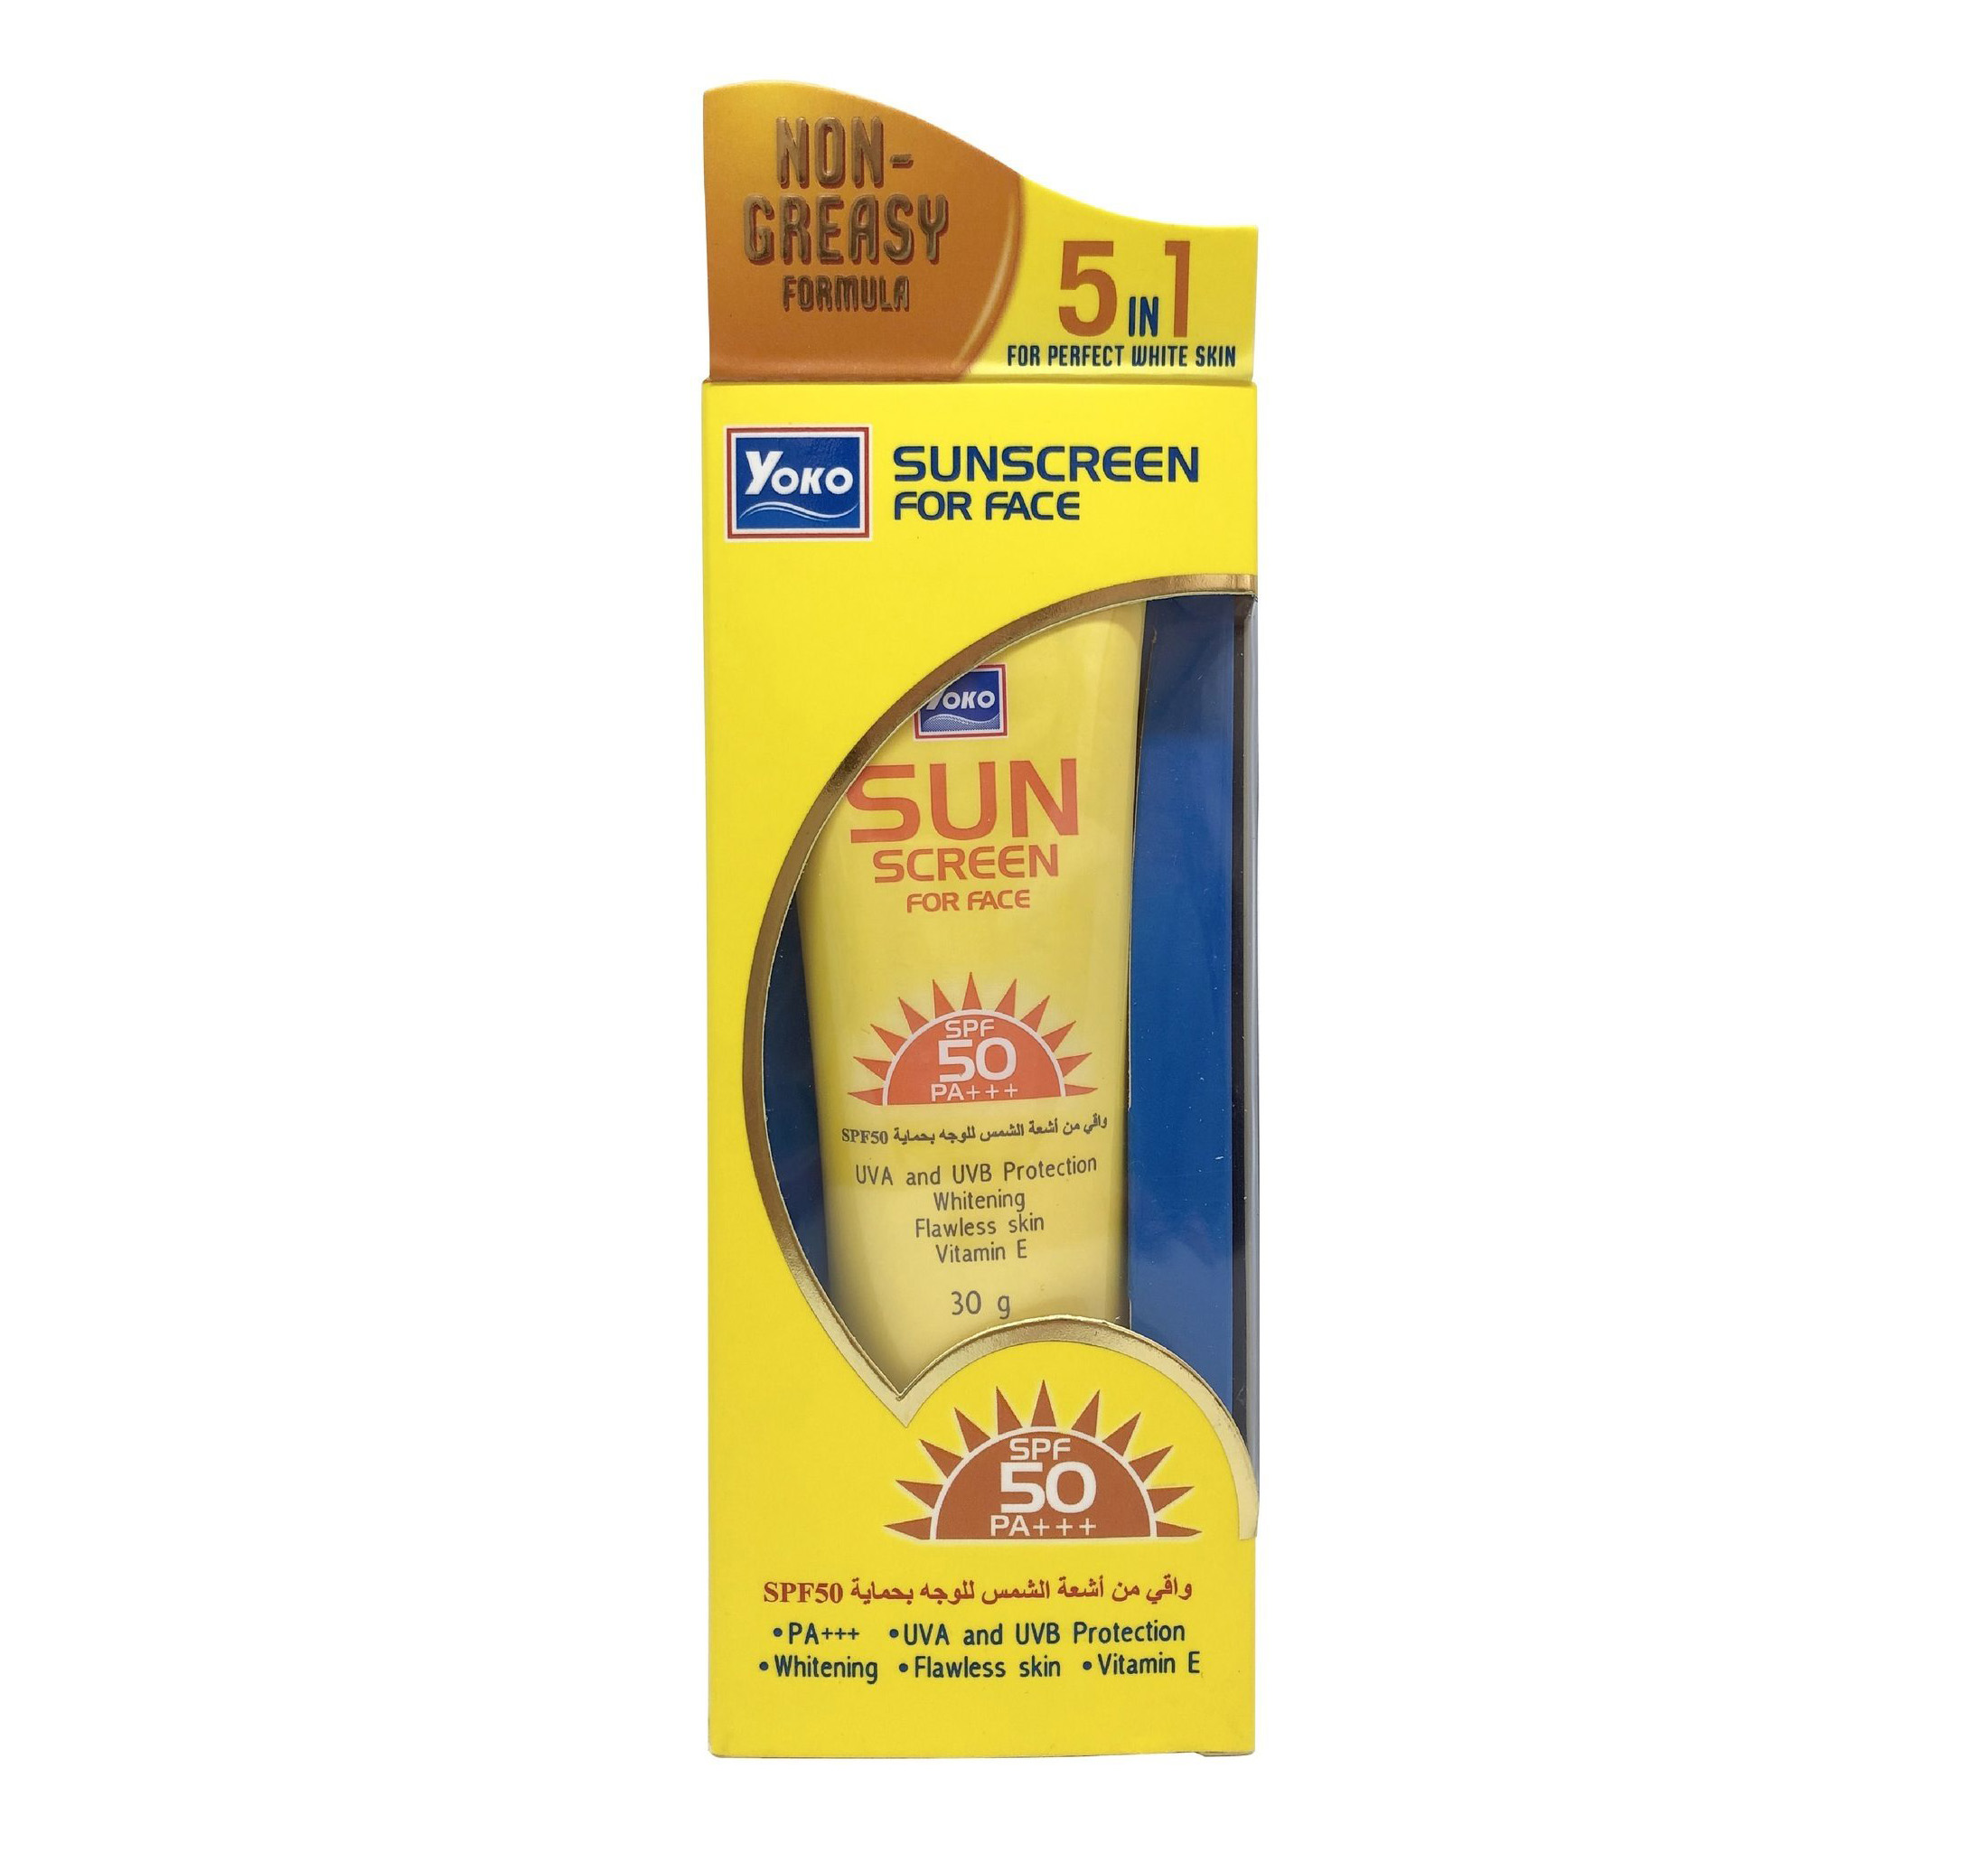 Тайский солнцезащитный легкий крем для лица Yoko Sunscreen face cream SPF 50 PA+++ 30 мл. yoko-sunscreen-for-face-50-spf